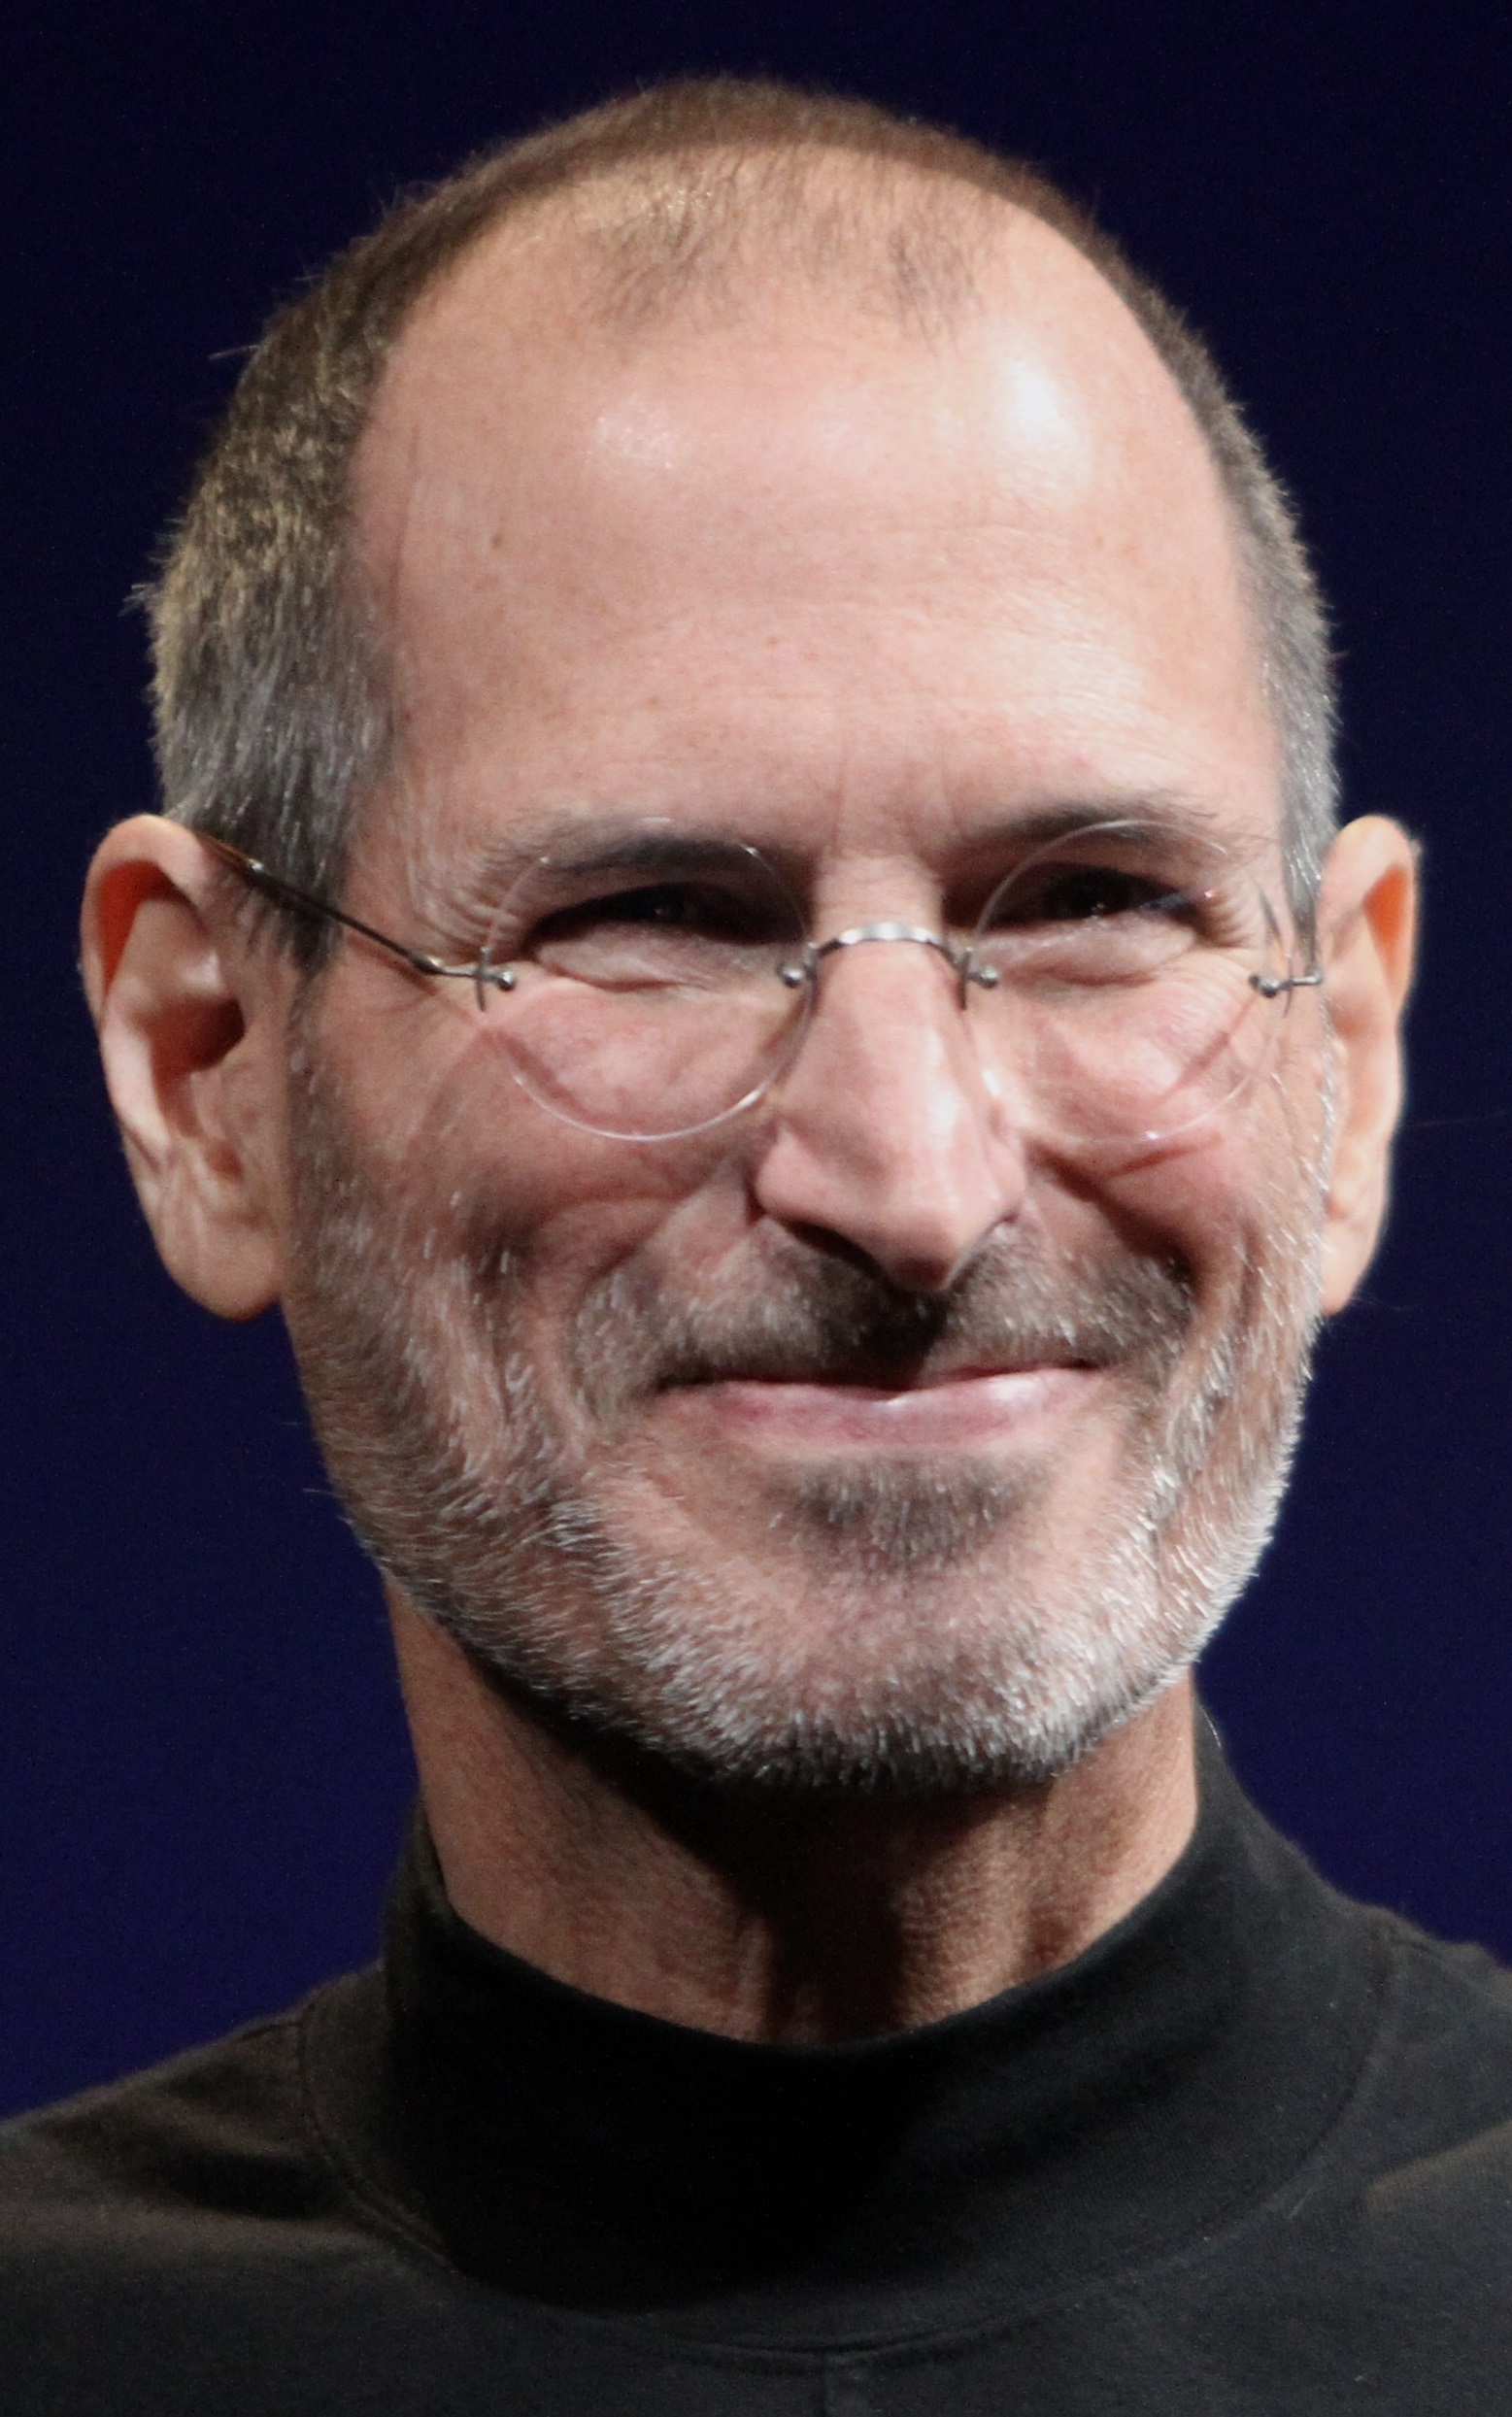 auteur Steve Jobs de la citation L'innovation n'a rien à voir avec le nombre de dollars de R&D dont vous avez. Quand Apple est venu avec le Mac, IBM dépensait au moins 100 fois plus en R&D. Ce n'est pas une question d'argent. Il s'agit des gens que vous avez, de la façon dont vous êtes dirigé et de combien vous obtenez.